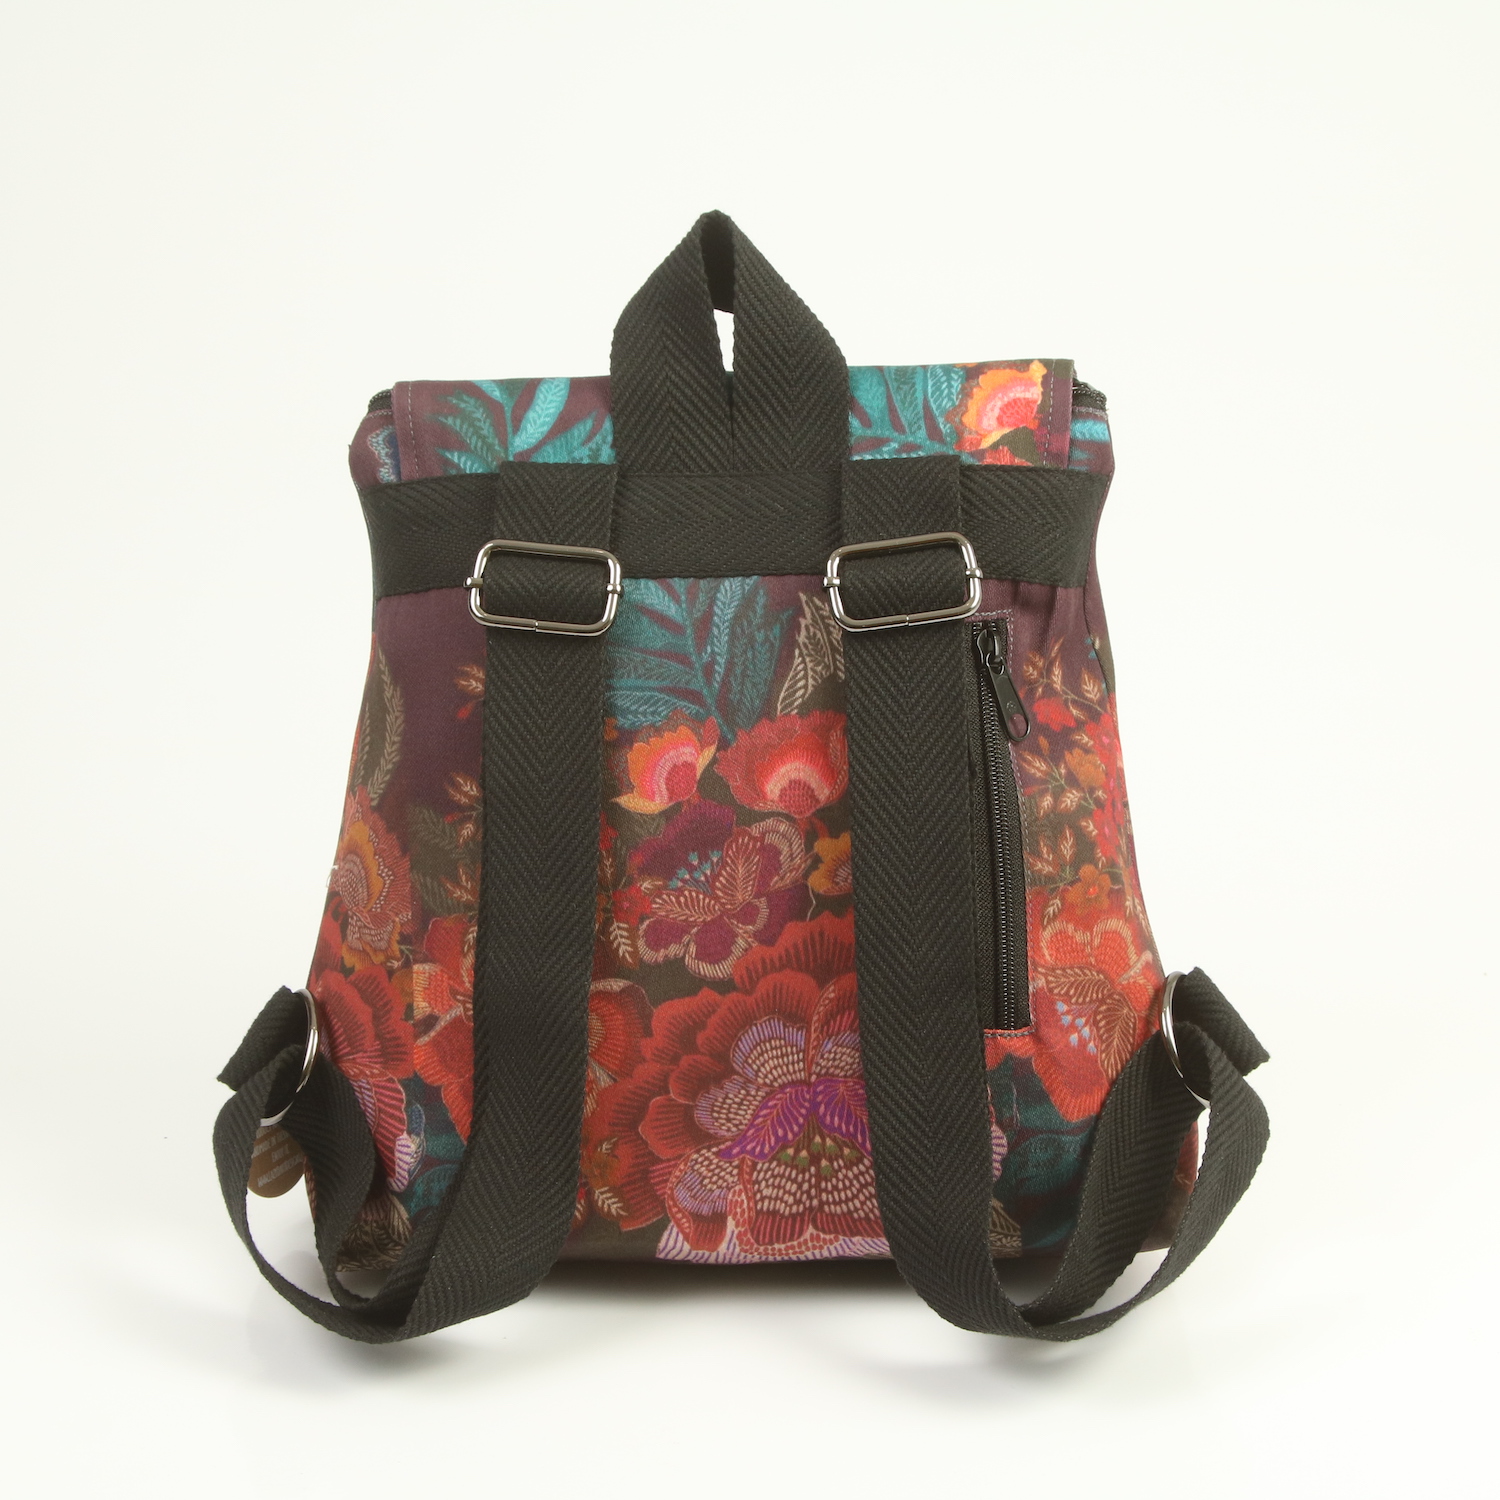 LazyDayz Designs Backpack γυναικείος σάκος πλάτης χειροποίητος bb0303c